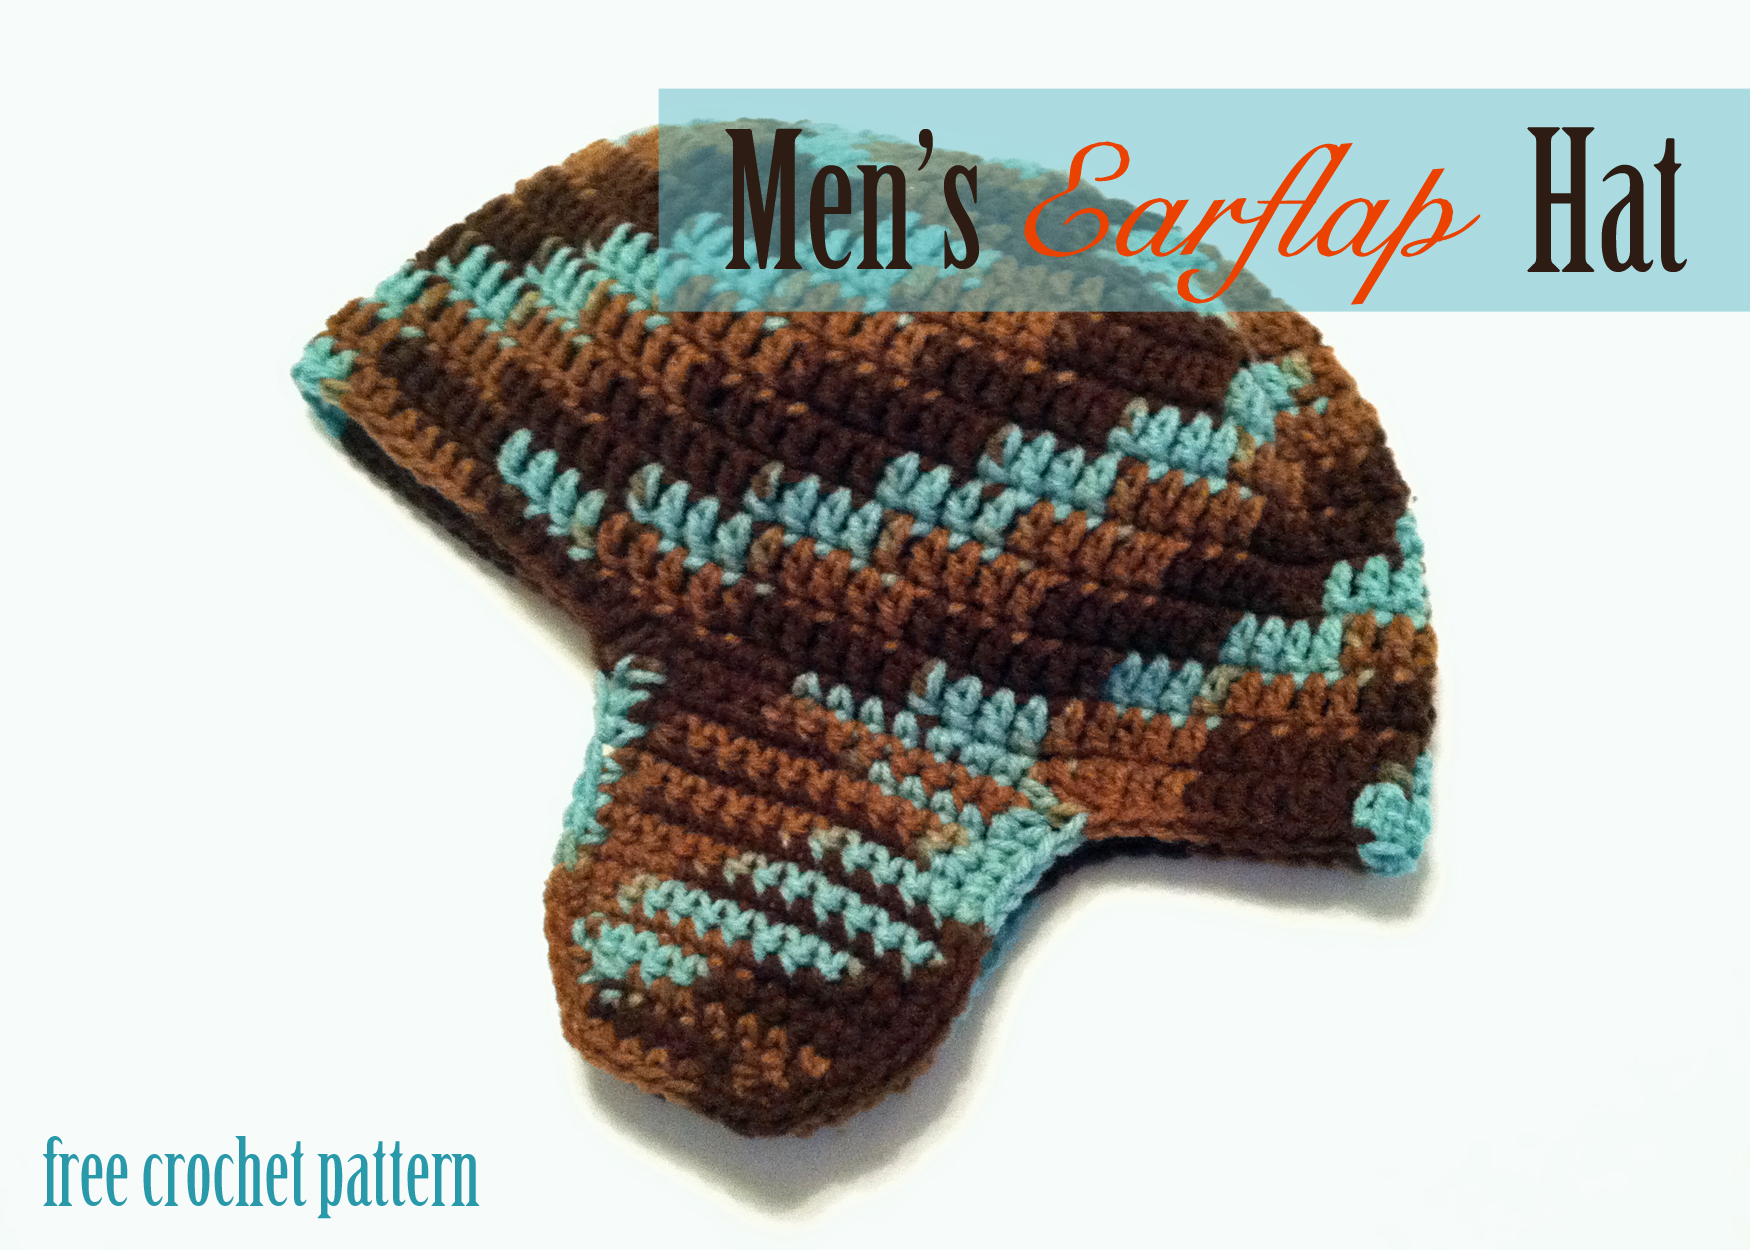 Free Crochet Patterns For Men Free Crochet Pattern Mens Earflap Hat